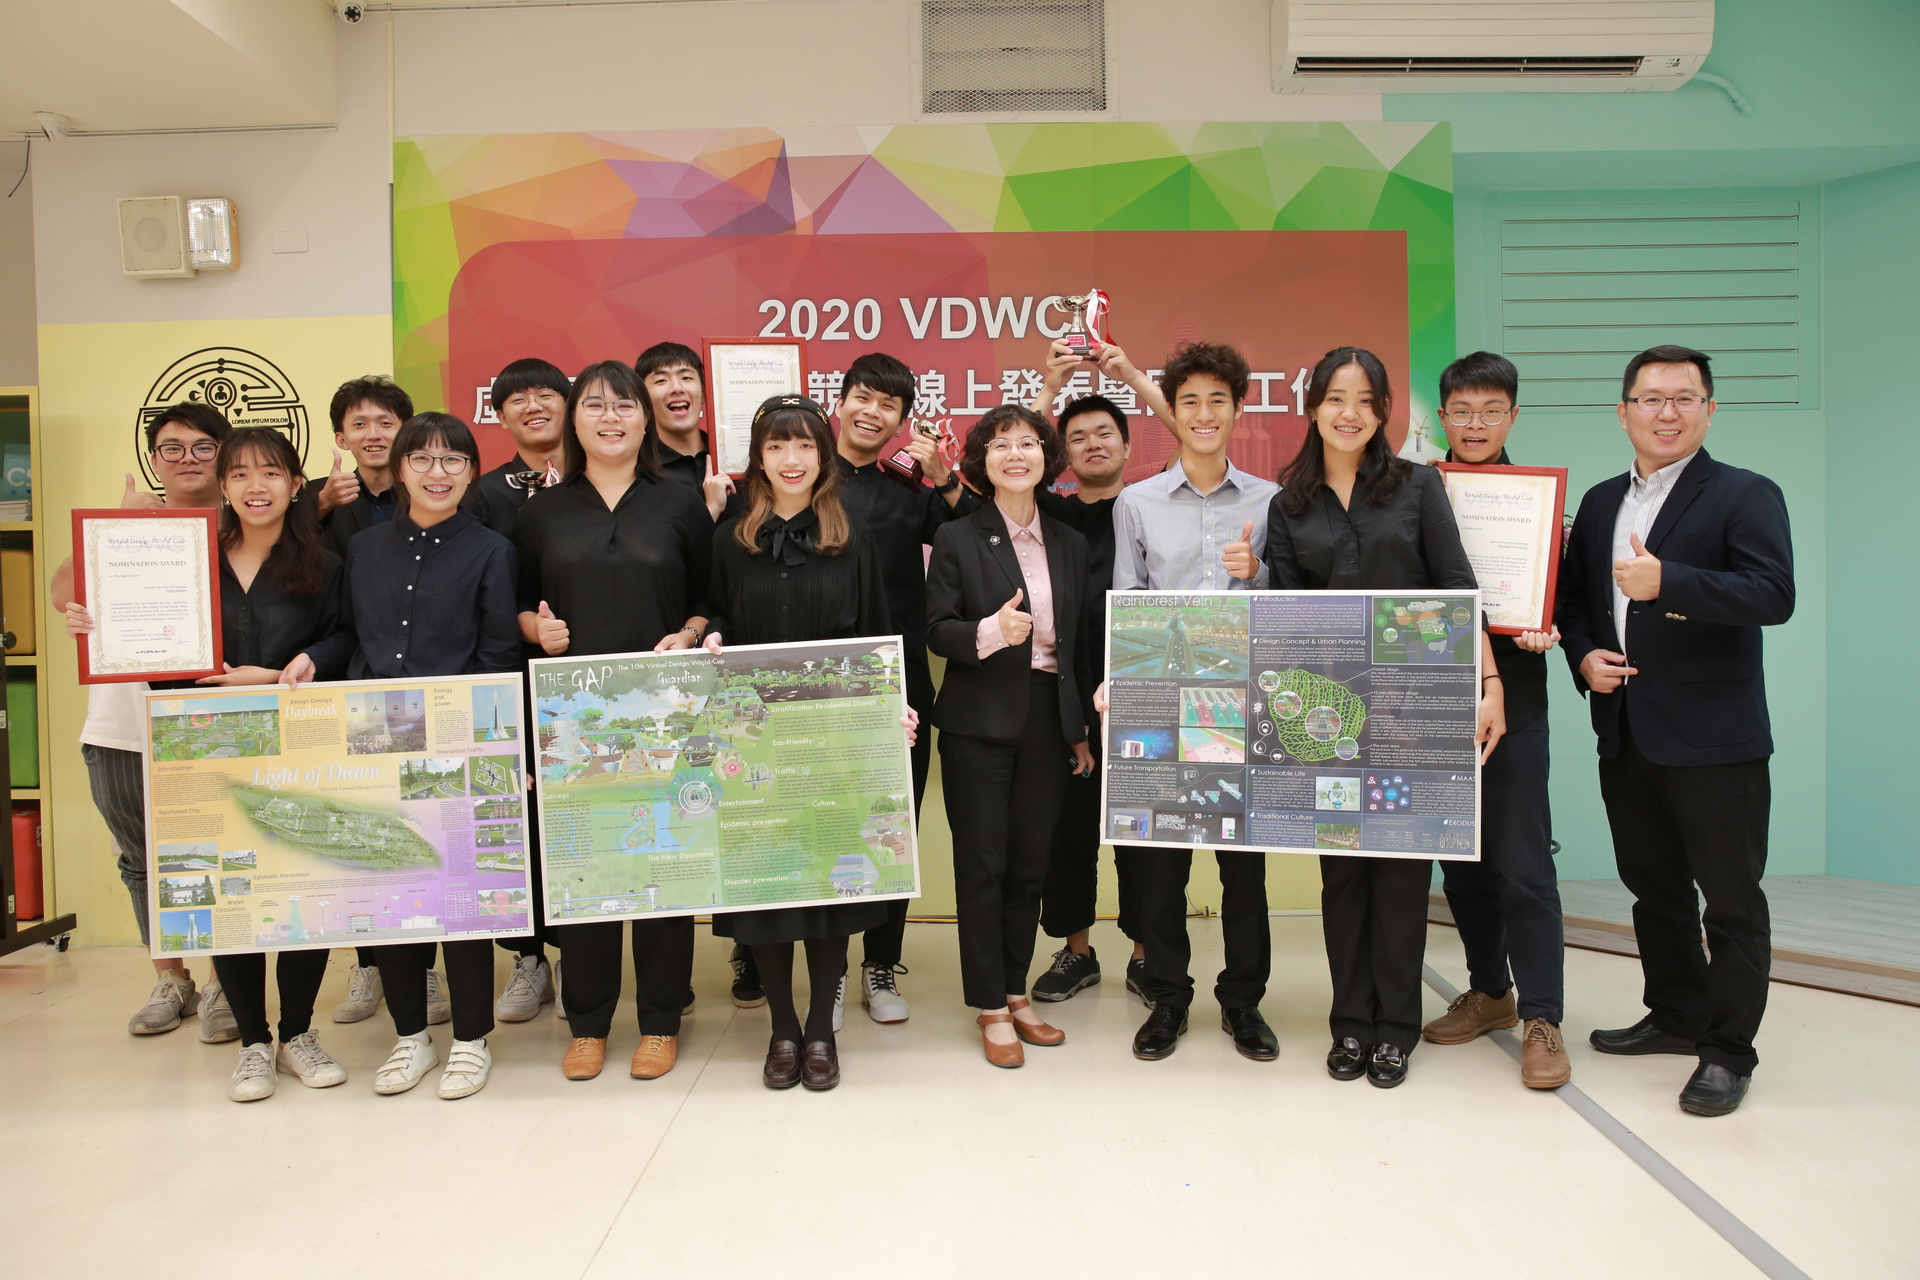 建築系師生獲第10屆VDWC 1亞軍、2評審特別獎，校長陳月端特別到場恭喜。